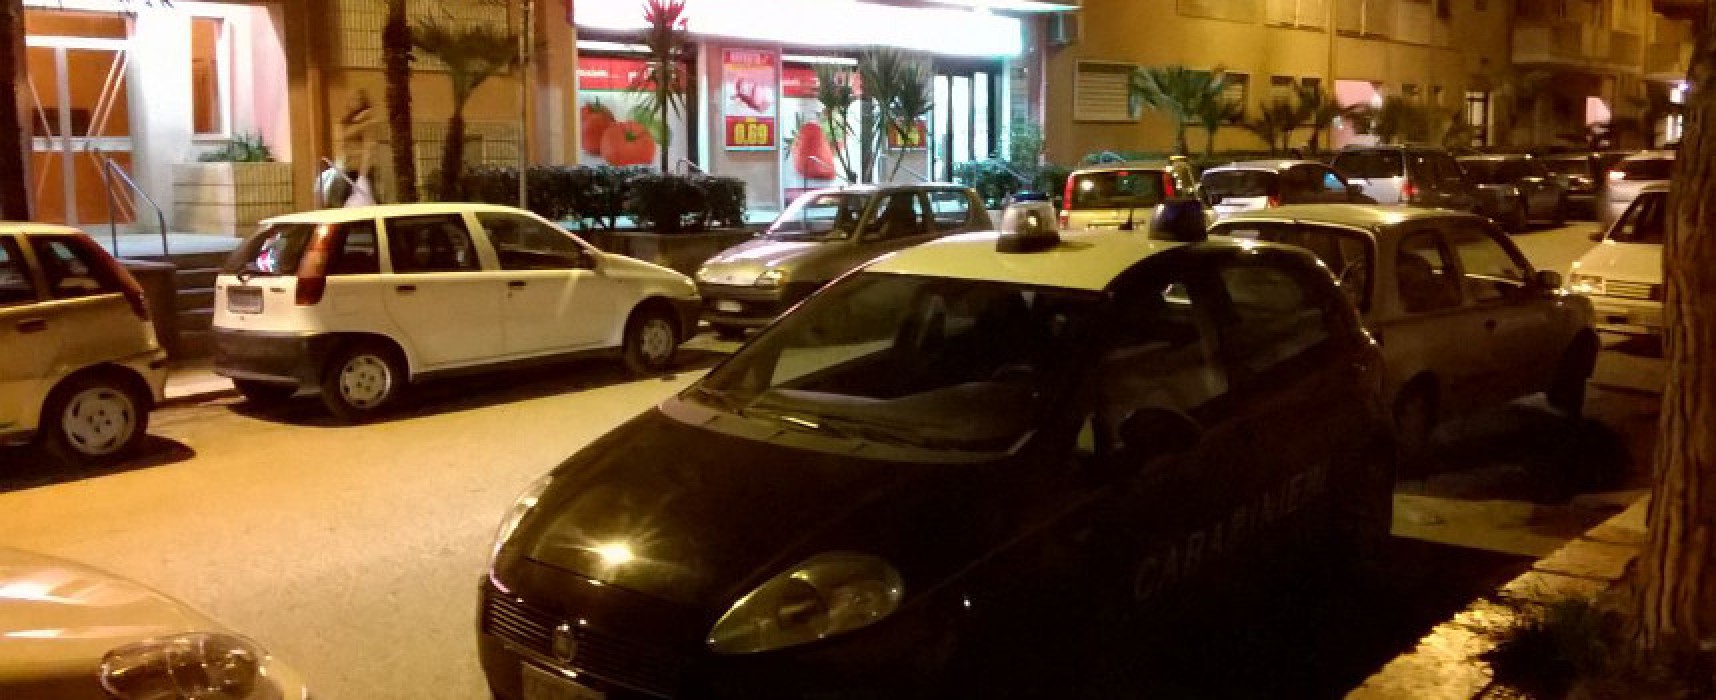 Rapinato il supermarket Despar di via Sacerdote di Leo, in corso le indagini dei Carabinieri